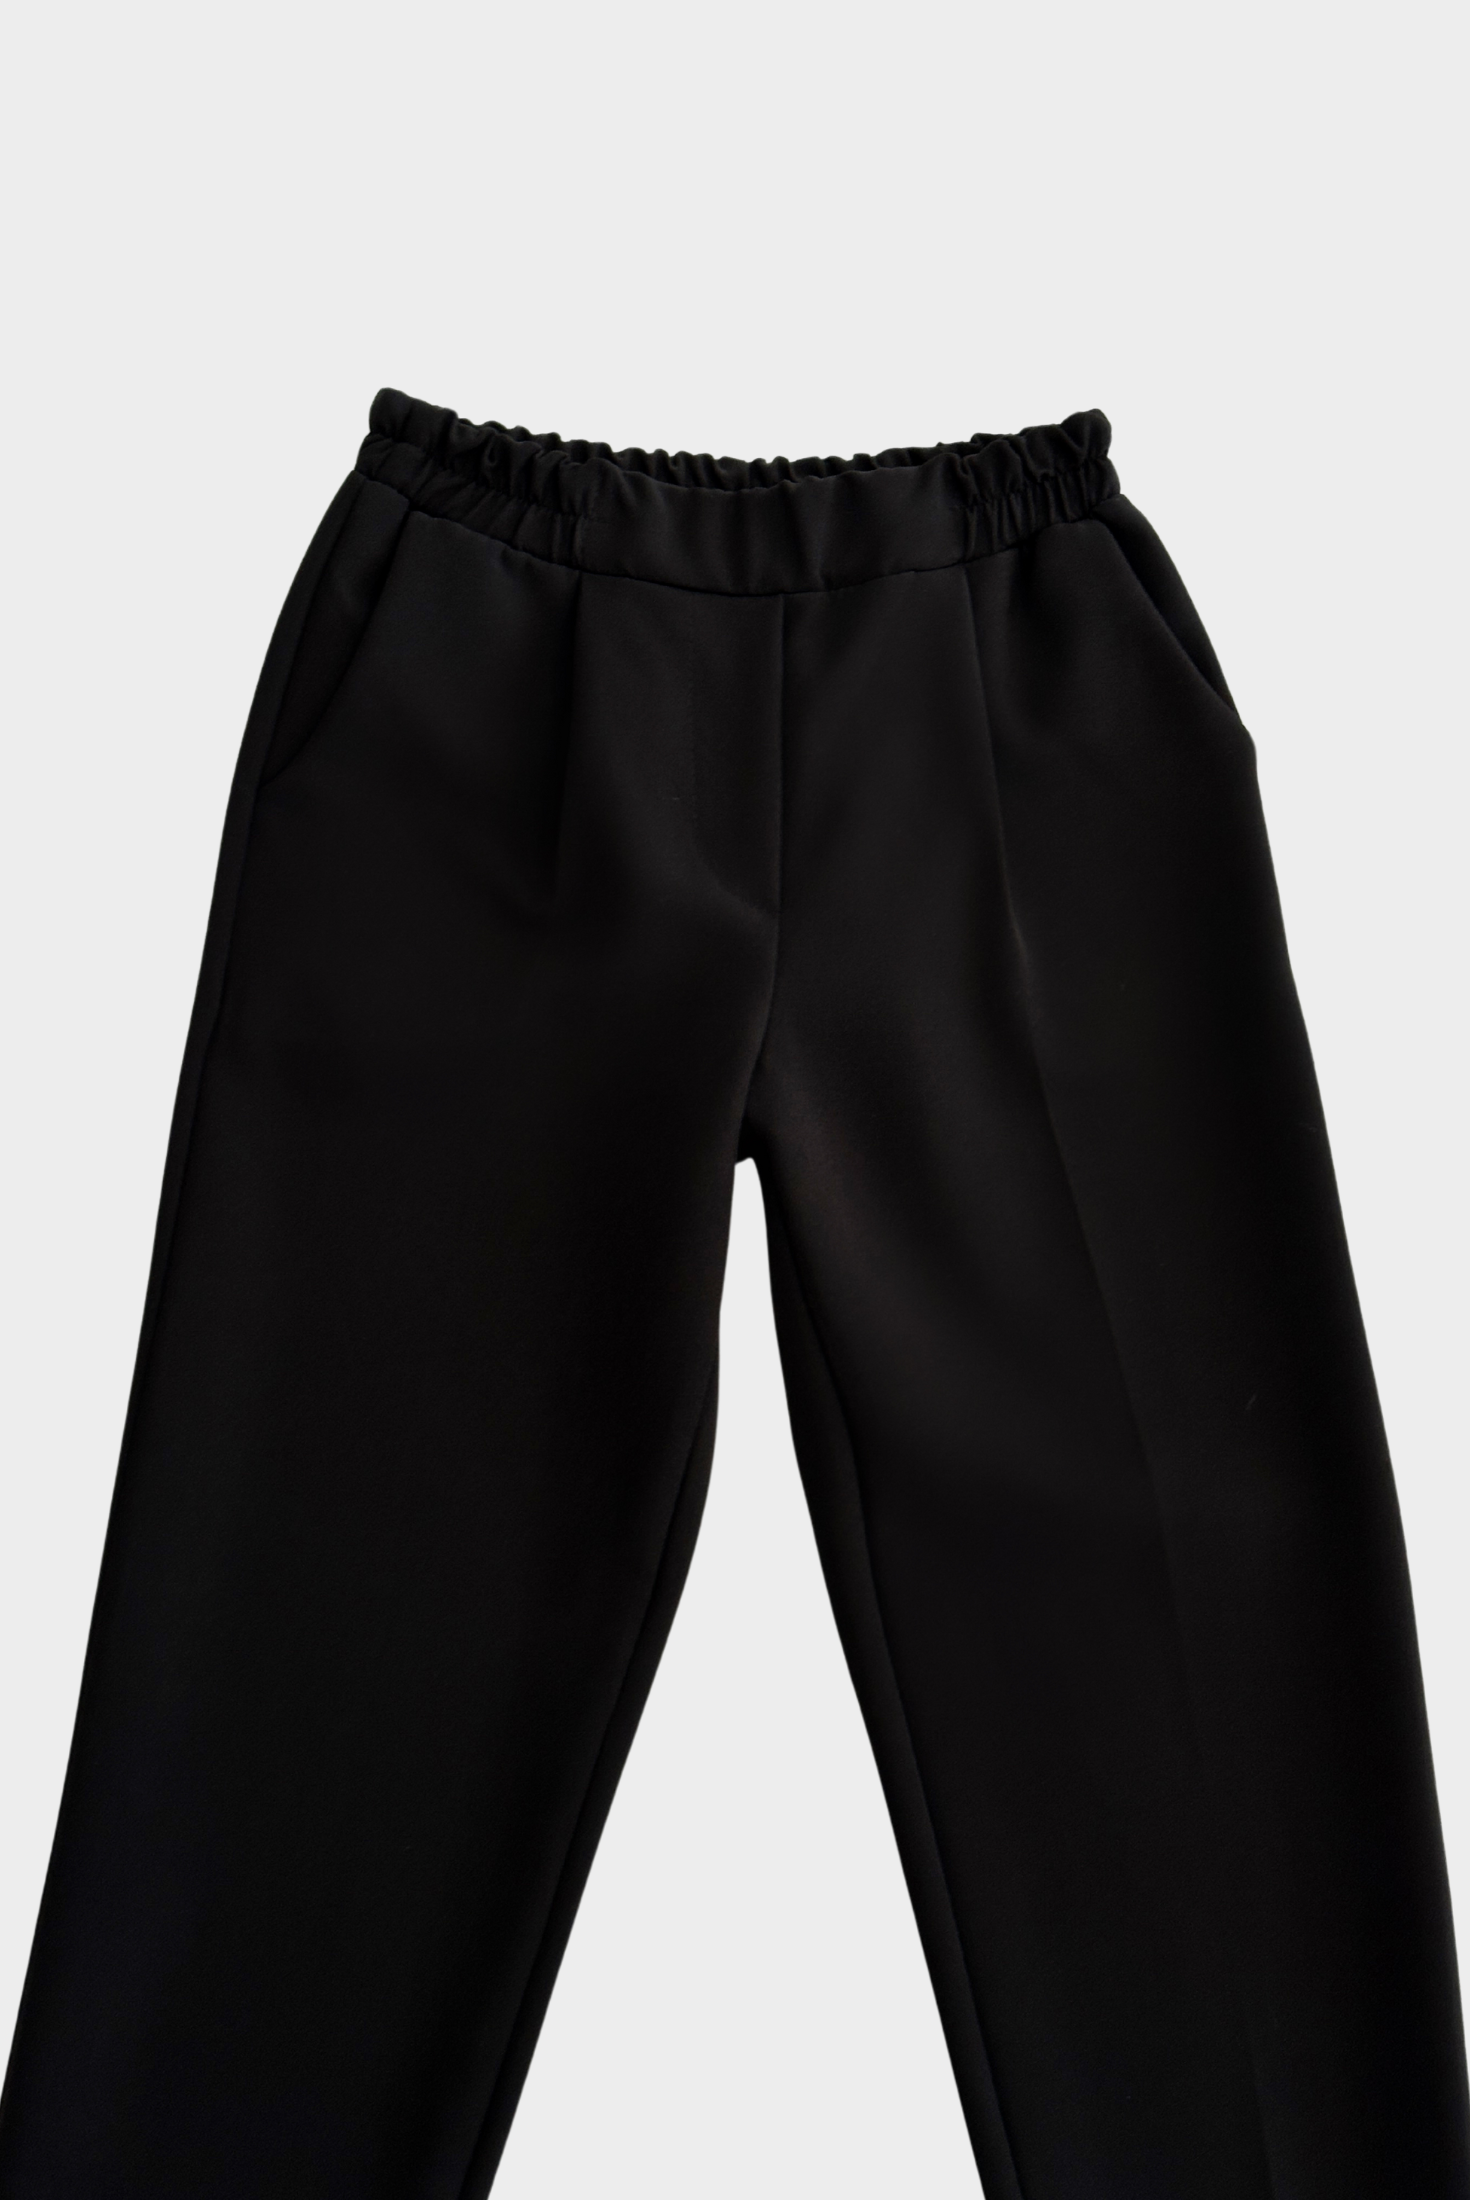 מכנס מחויט עם גומי במותן בצבע שחור